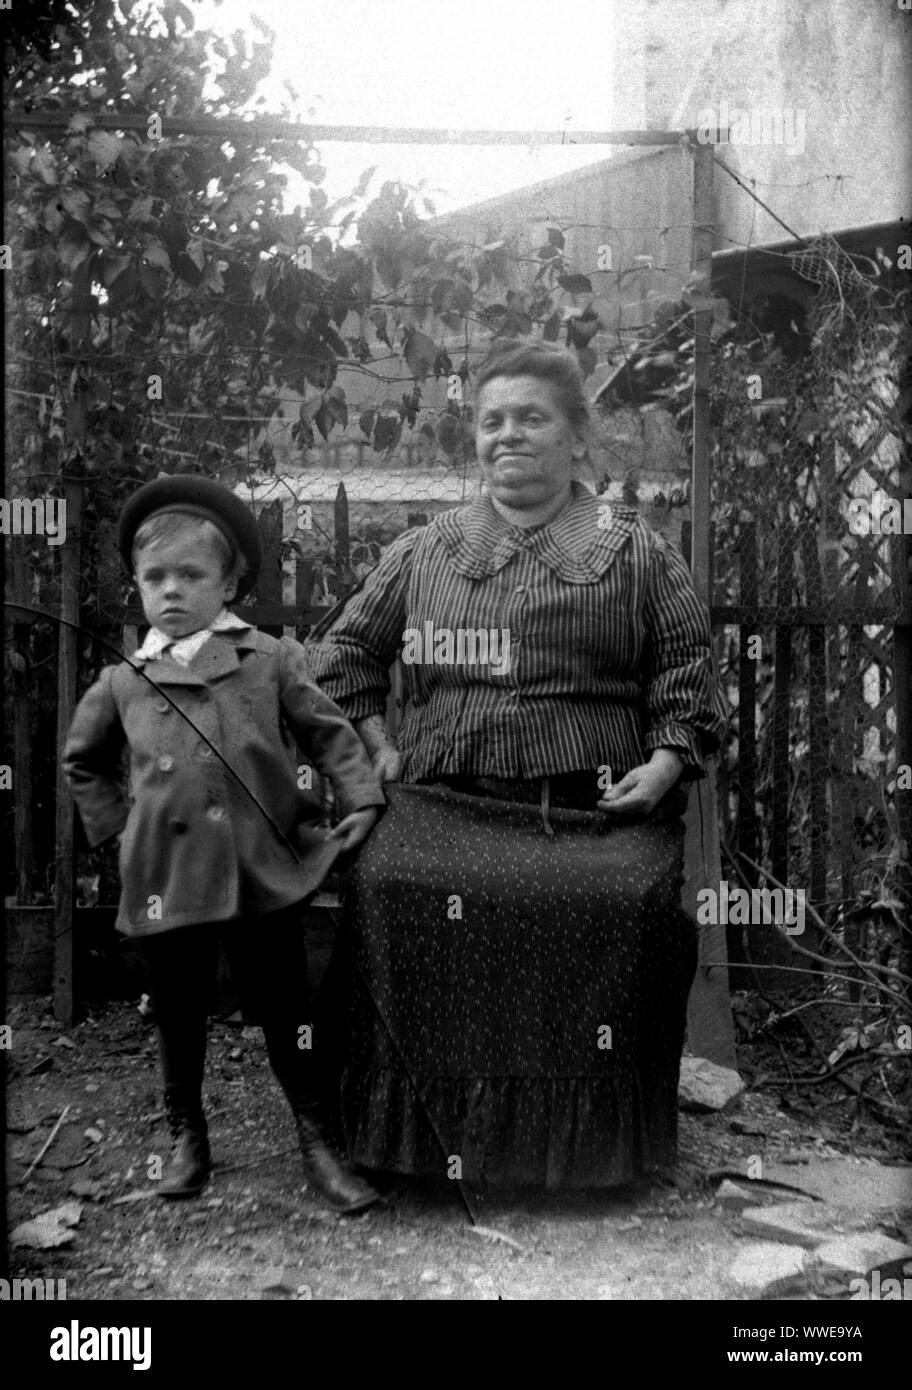 AJAXNETPHOTO. 1889-1900 (environ). FRANCE (LIEU EXACT INCONNU.). Famille - SNAPSHOT - femme assise avec jeune garçon dans jardin clôturé de l'environnement. Droit de l'original sur plaque de verre ; DATE SOURCE À PARTIR DE LA BOÎTE DE PLAQUE DE VERRE COUVERCLE. Photographe:Inconnu © COPYRIGHT DE L'IMAGE NUMÉRIQUE PHOTO VINTAGE AJAX AJAX BIBLIOTHÈQUE SOURCE : VINTAGE PHOTO LIBRARY COLLECTION REF:AVL   1889 PEO FRA 110 Banque D'Images